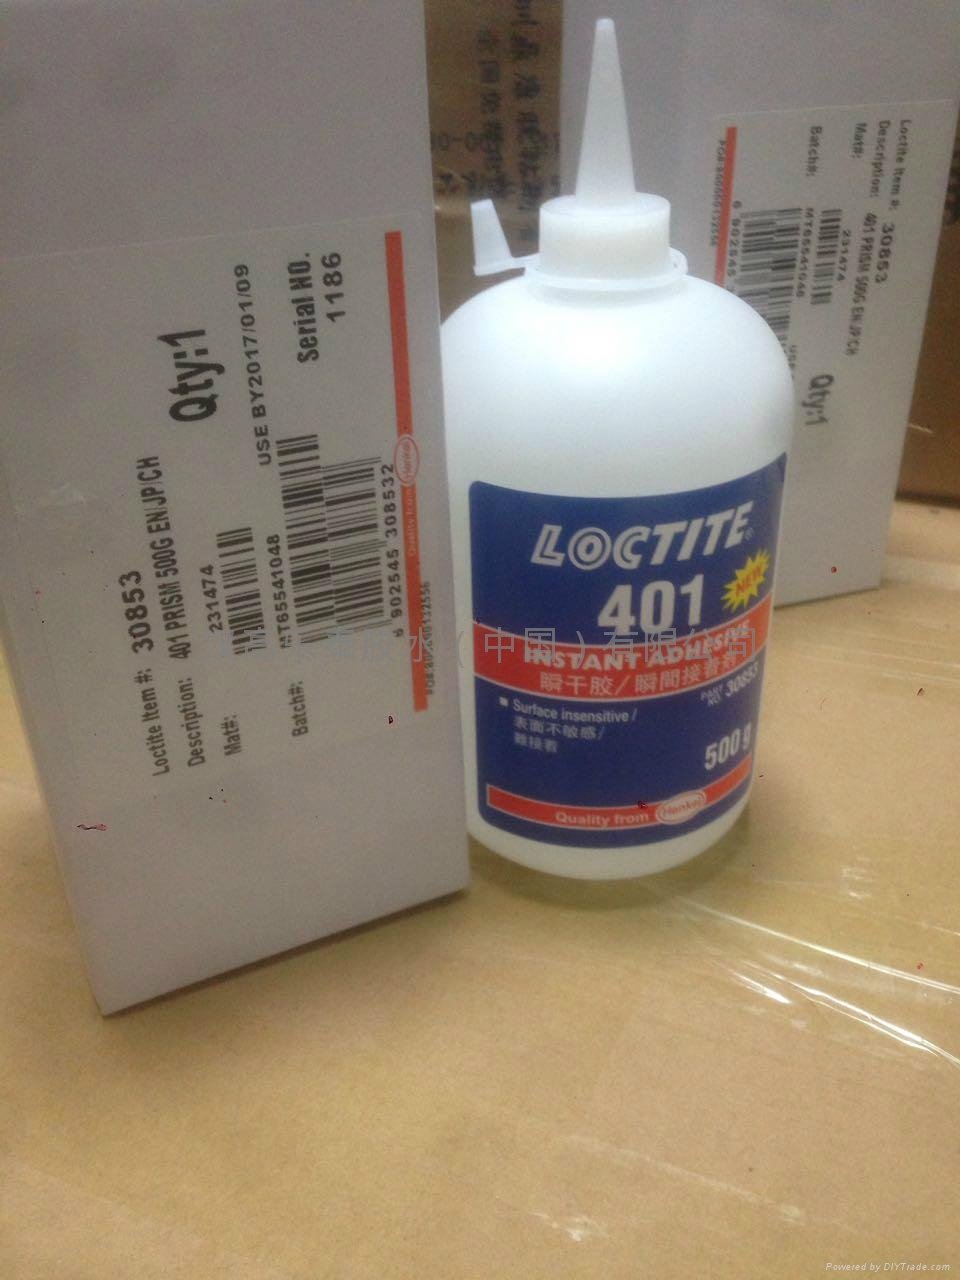 Loctite 401 glue loctite henkel loctite 401 glue in China 5